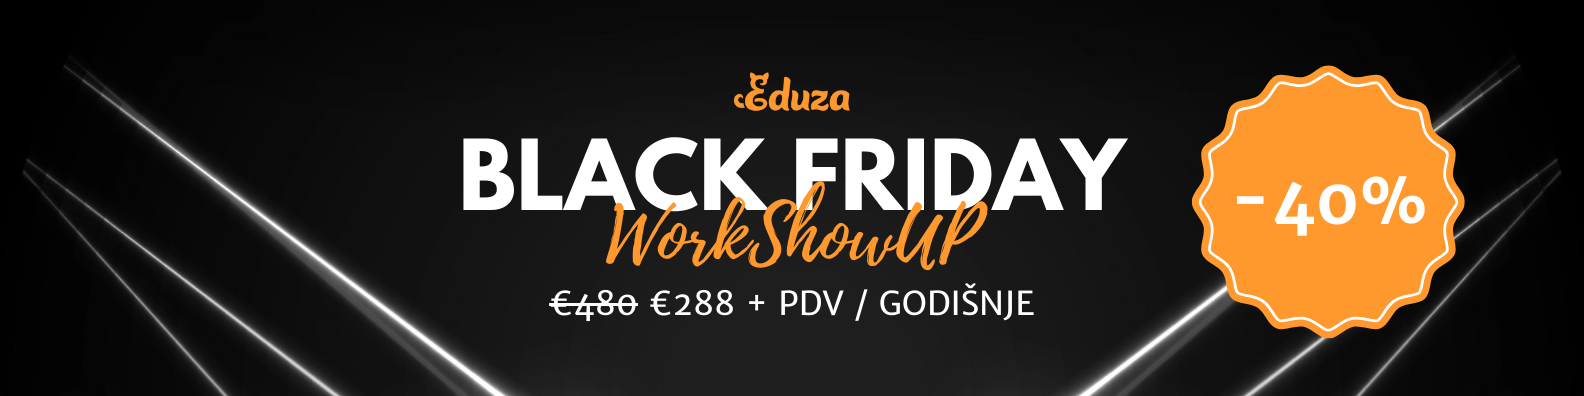 Eduza Black Friday WorkShowUP